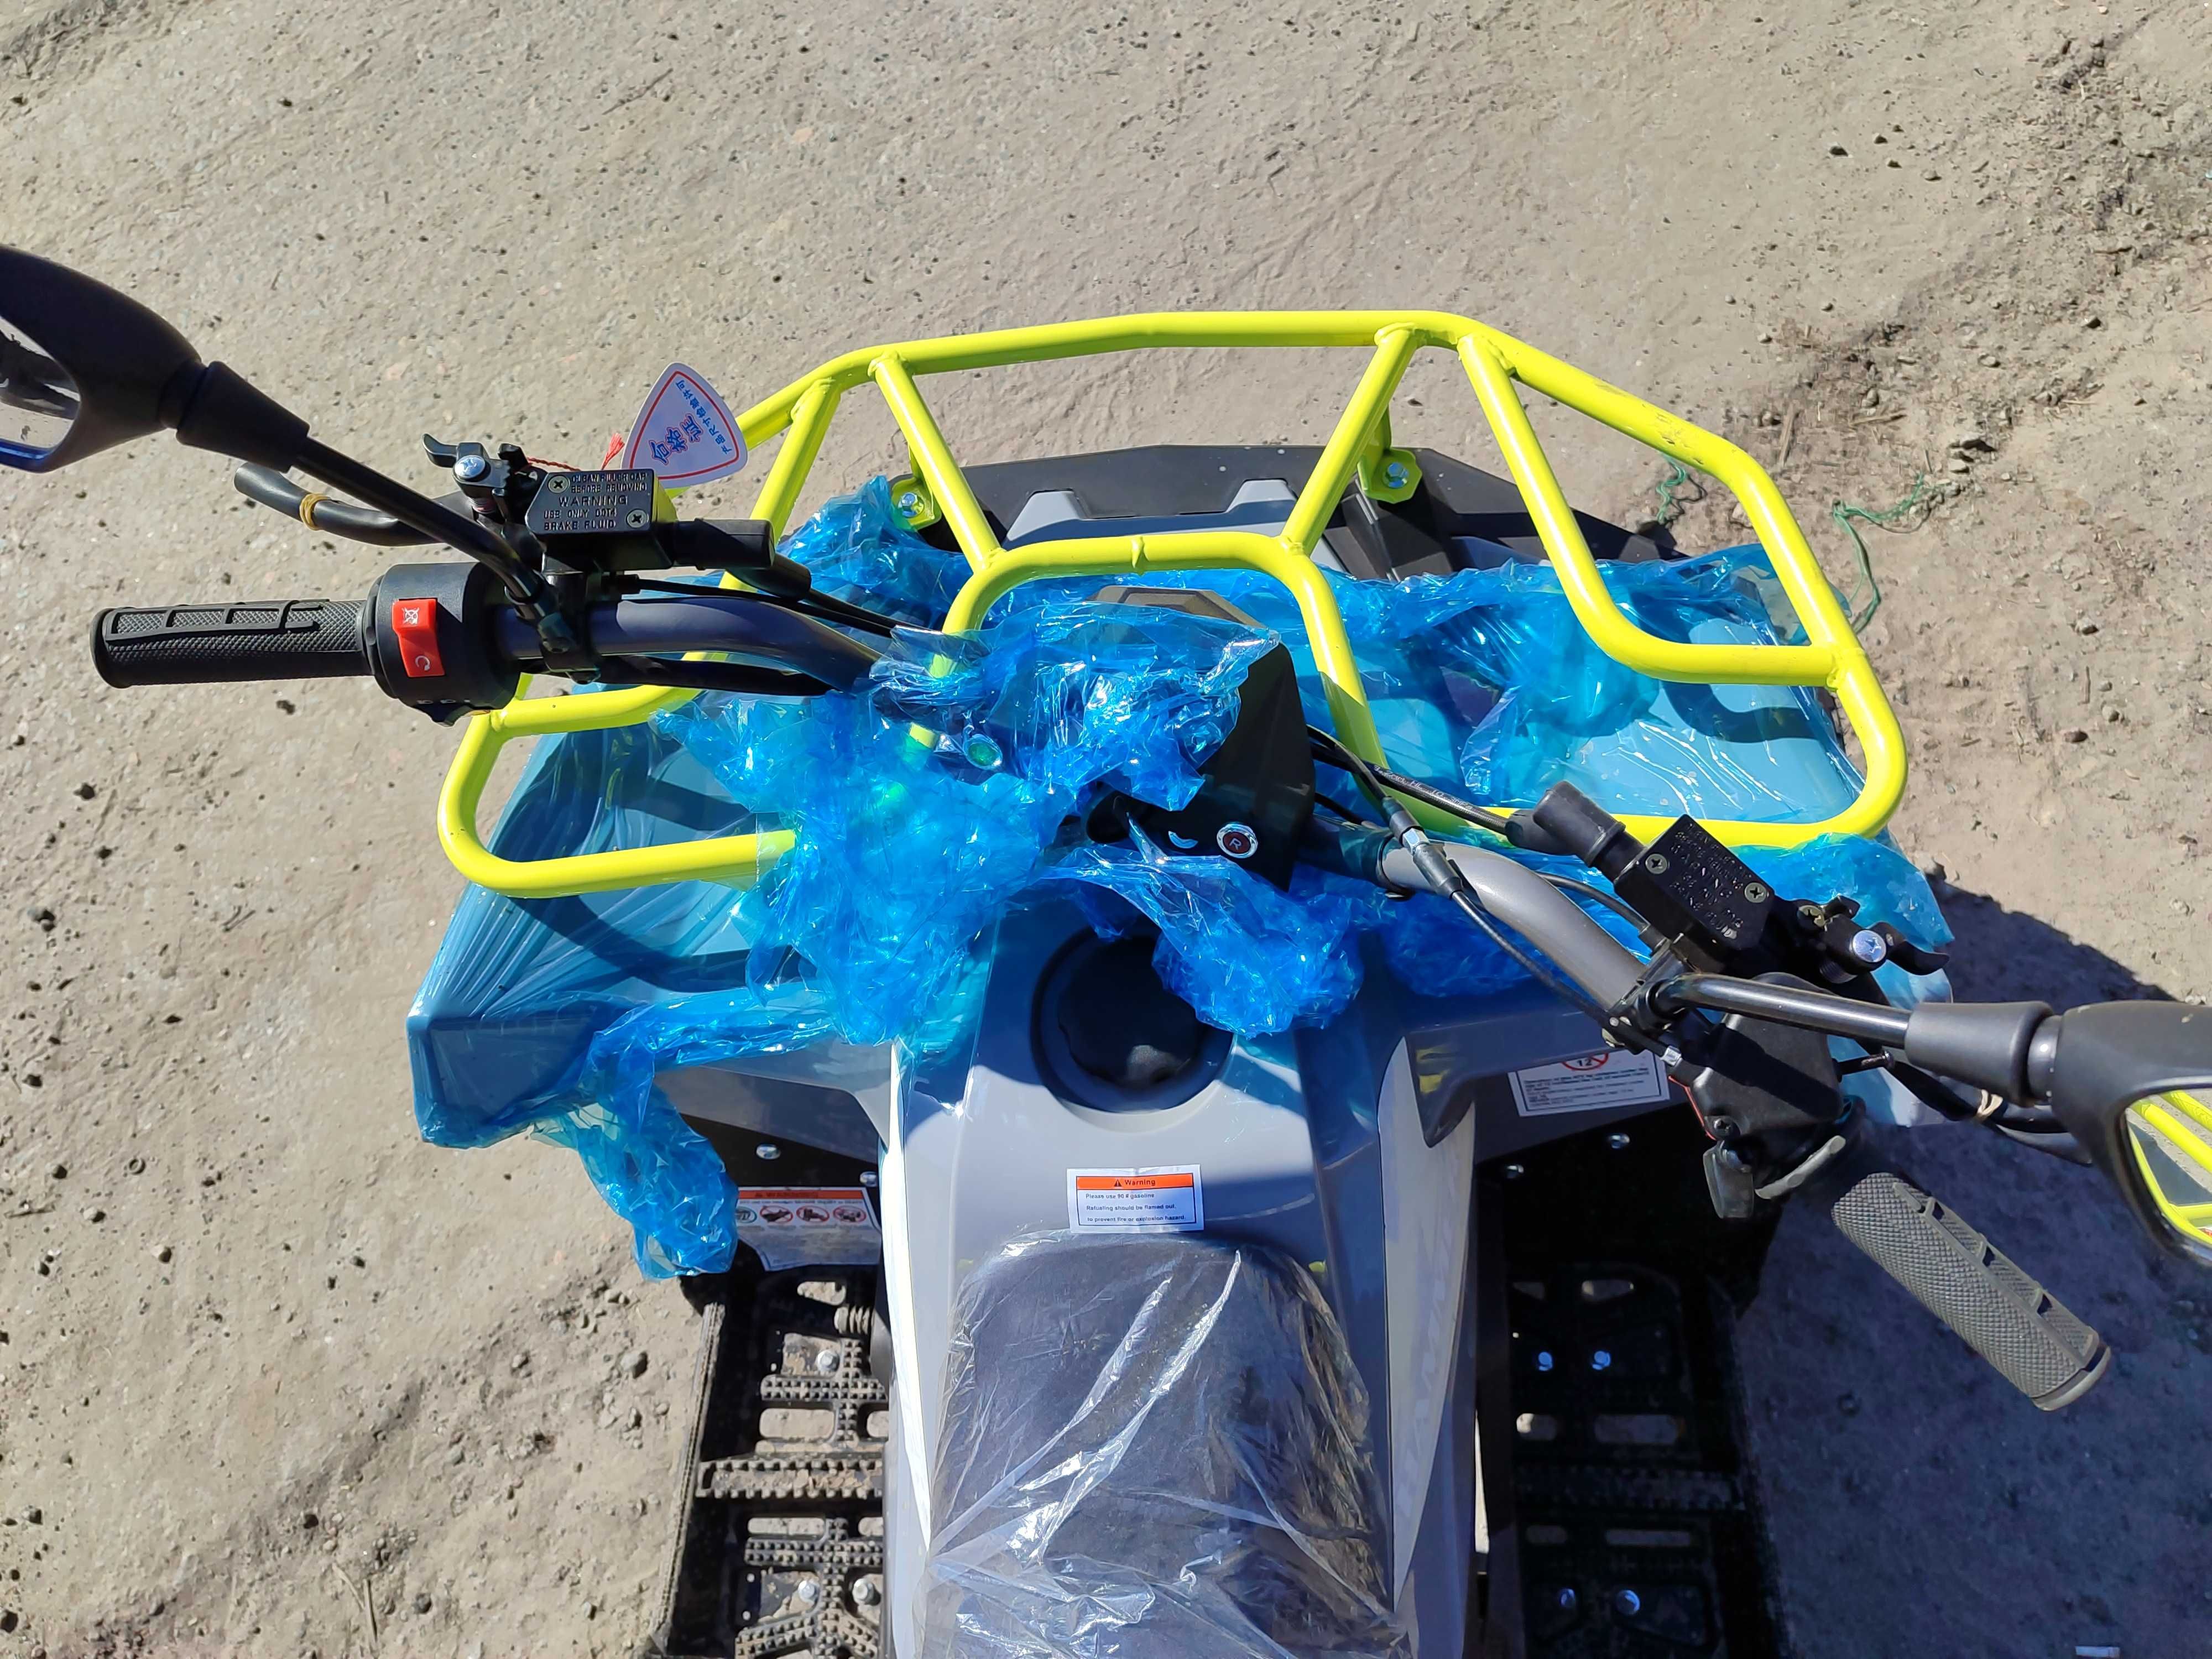 Детский Квадроцикл Микилон хамер 125сс доставка бесплатная